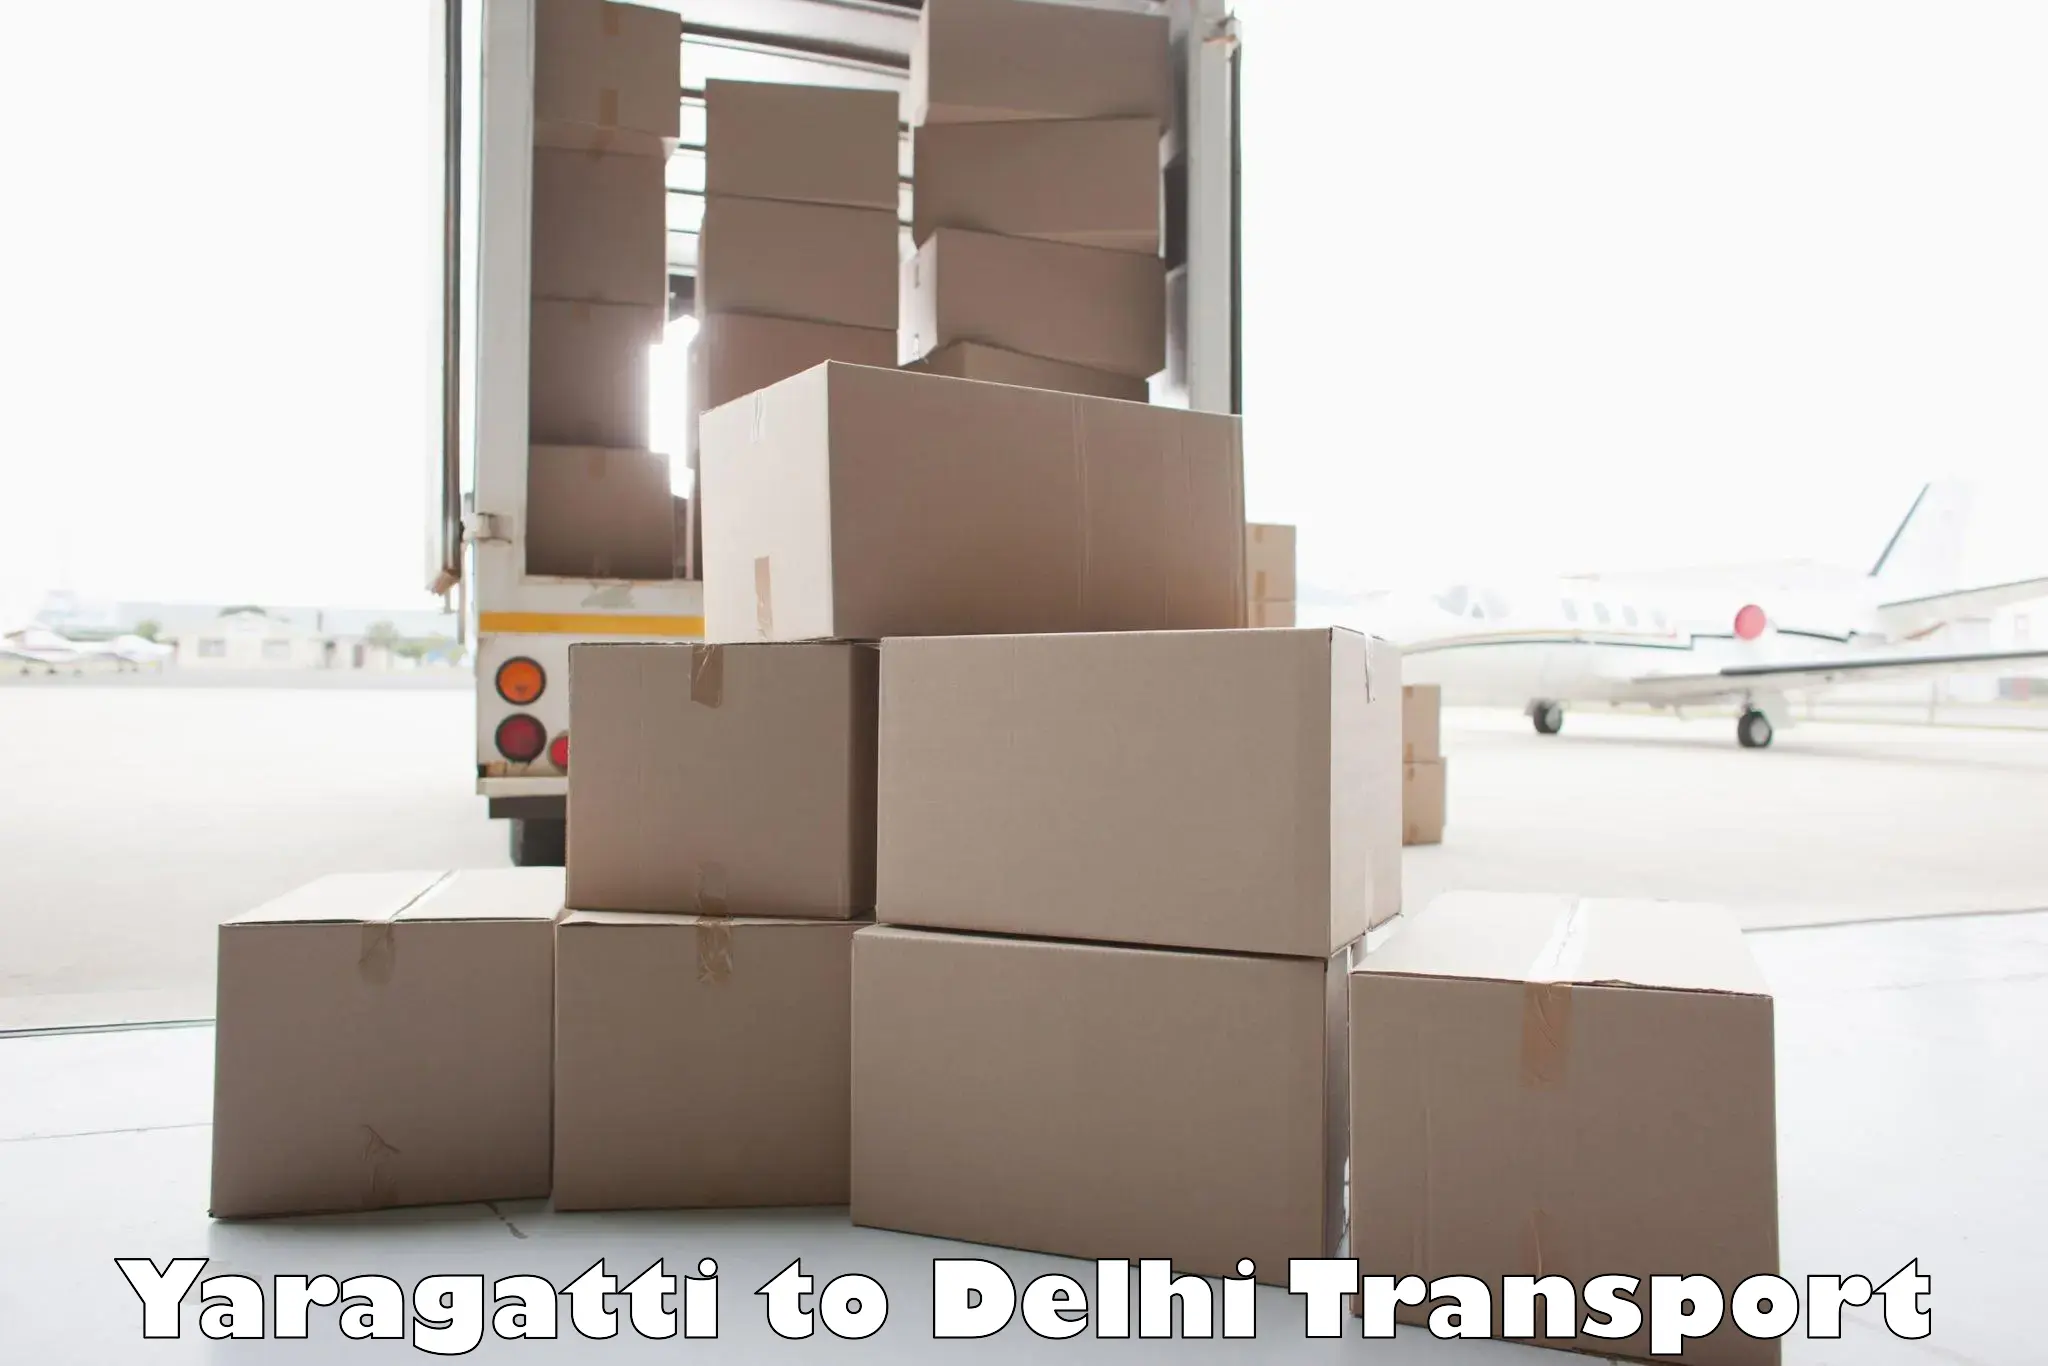 Shipping partner Yaragatti to Delhi